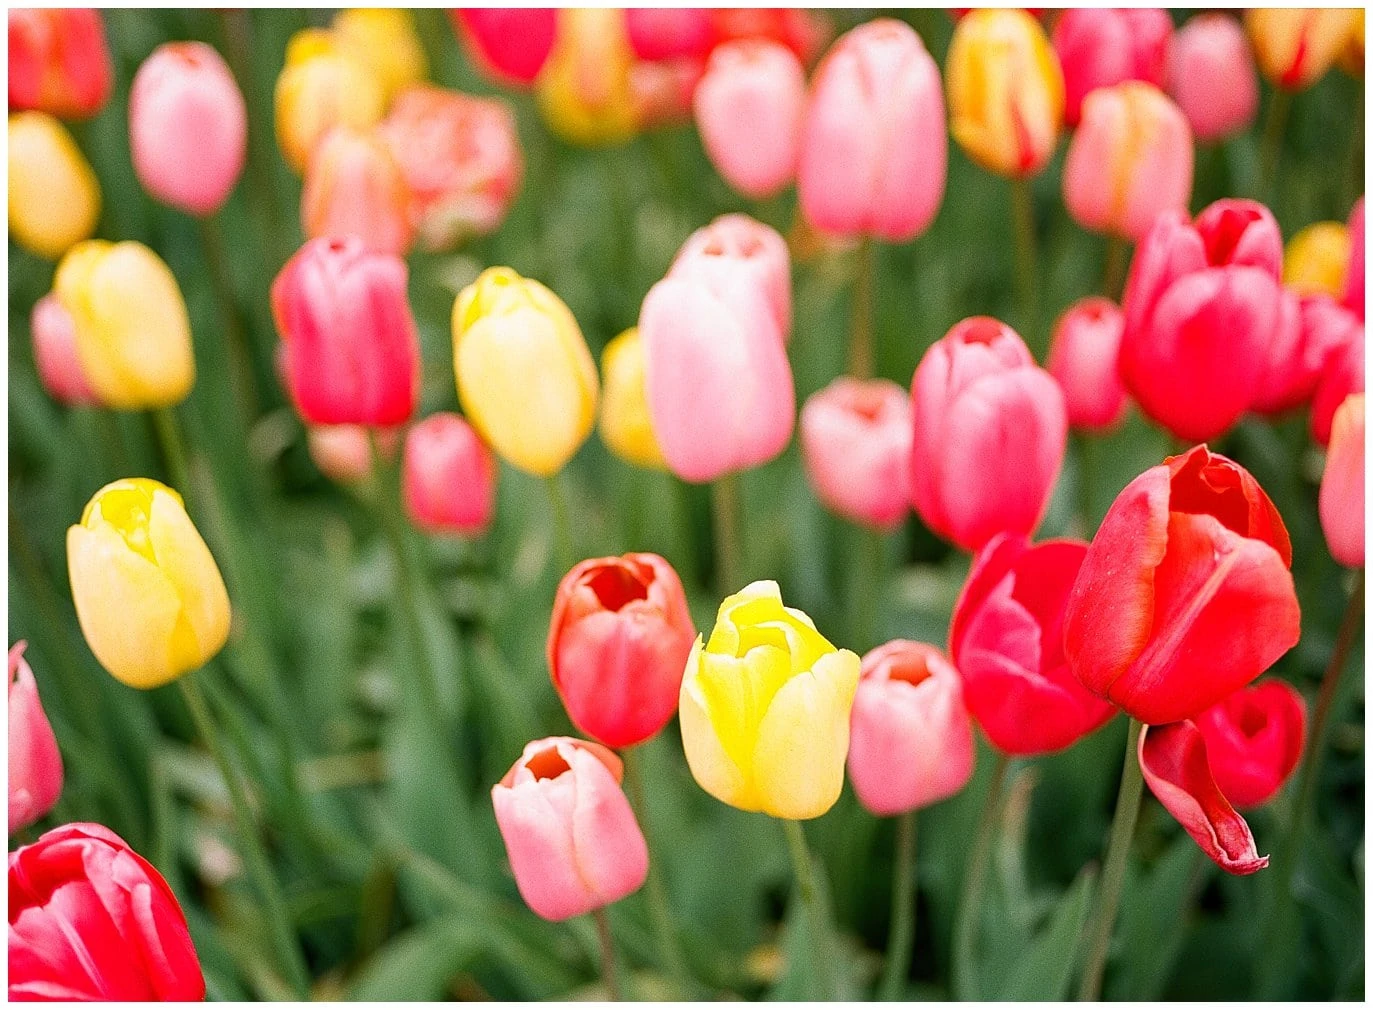 tulips in Netherlands garden